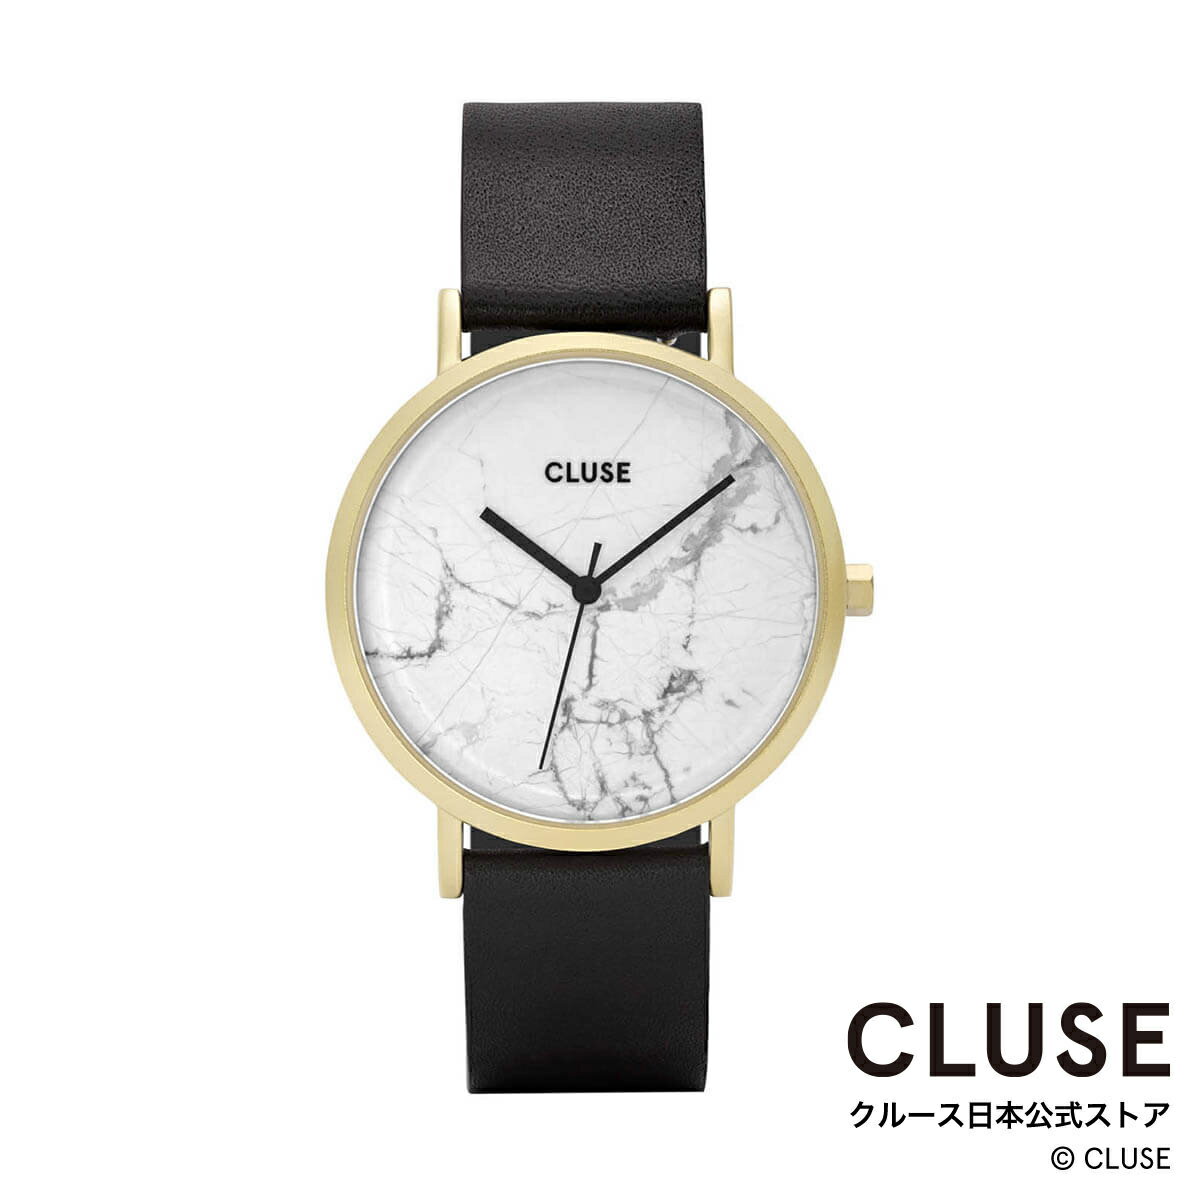 クルース CLUSE 日本公式ストア ラ・ロッシュ ゴールド ホワイト マーブル ブラック レディース 女性 腕時計 時計 防水 クォーツ